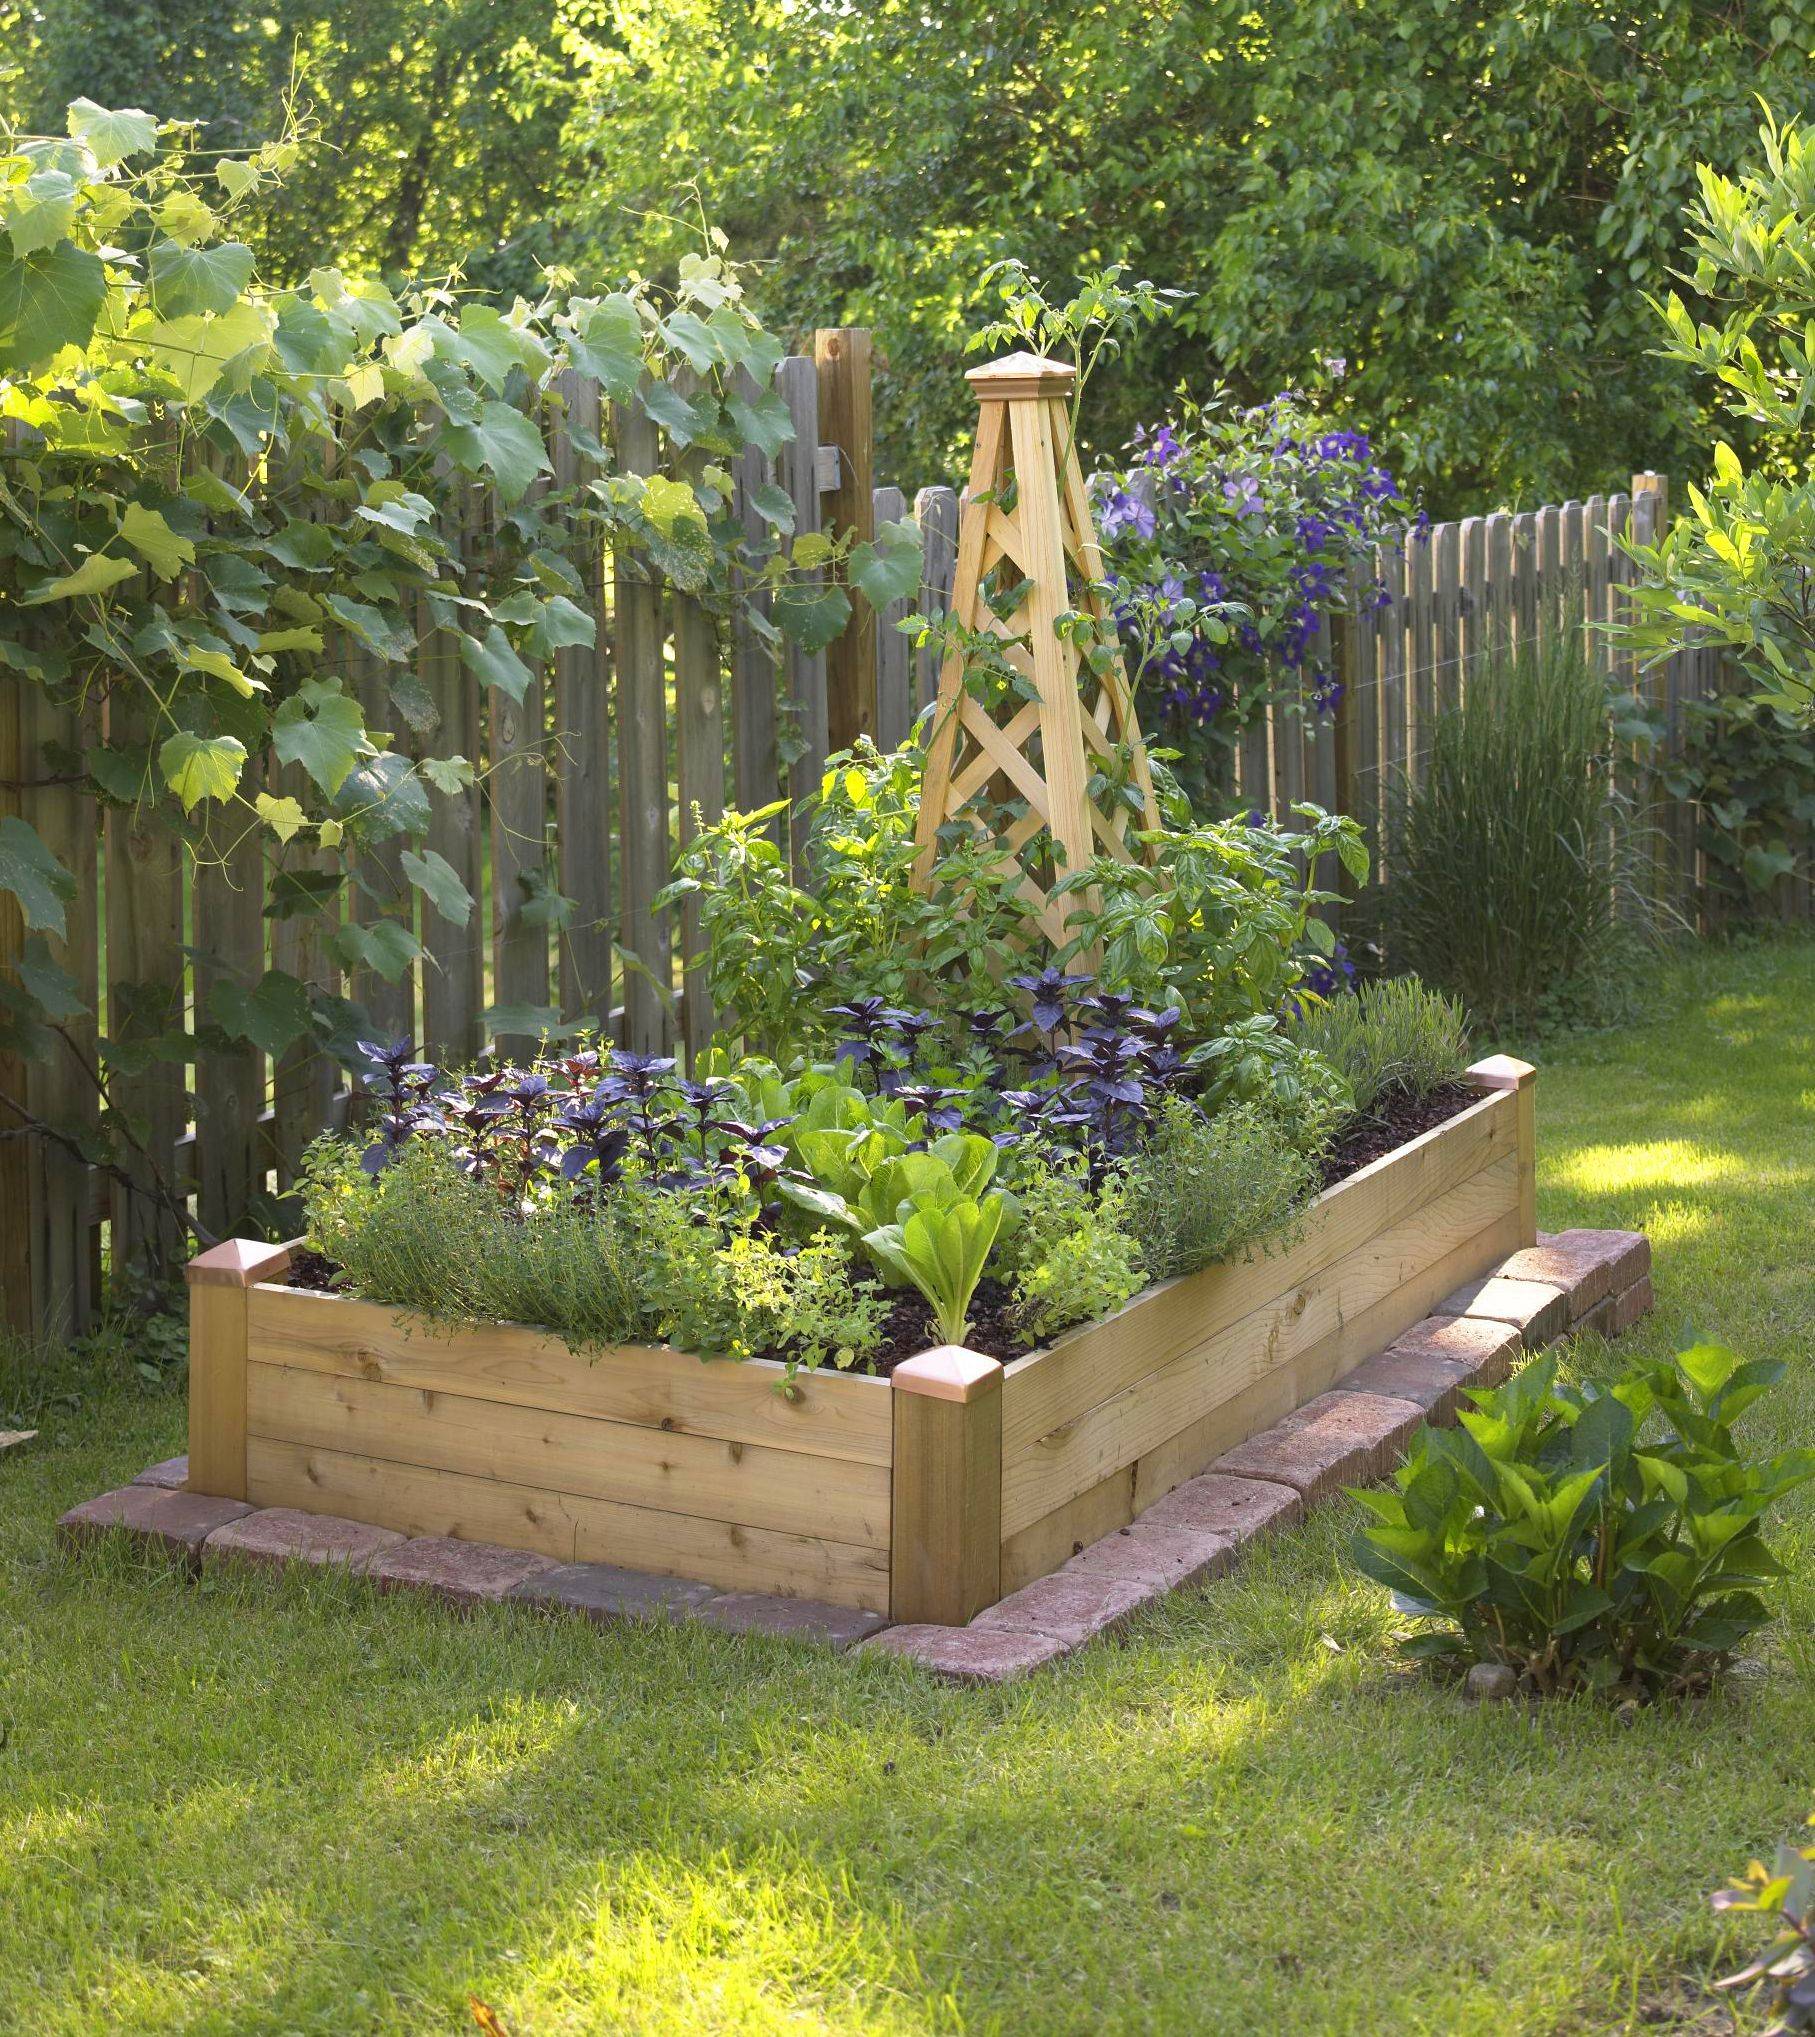 Easy Diy Raised Garden Designs